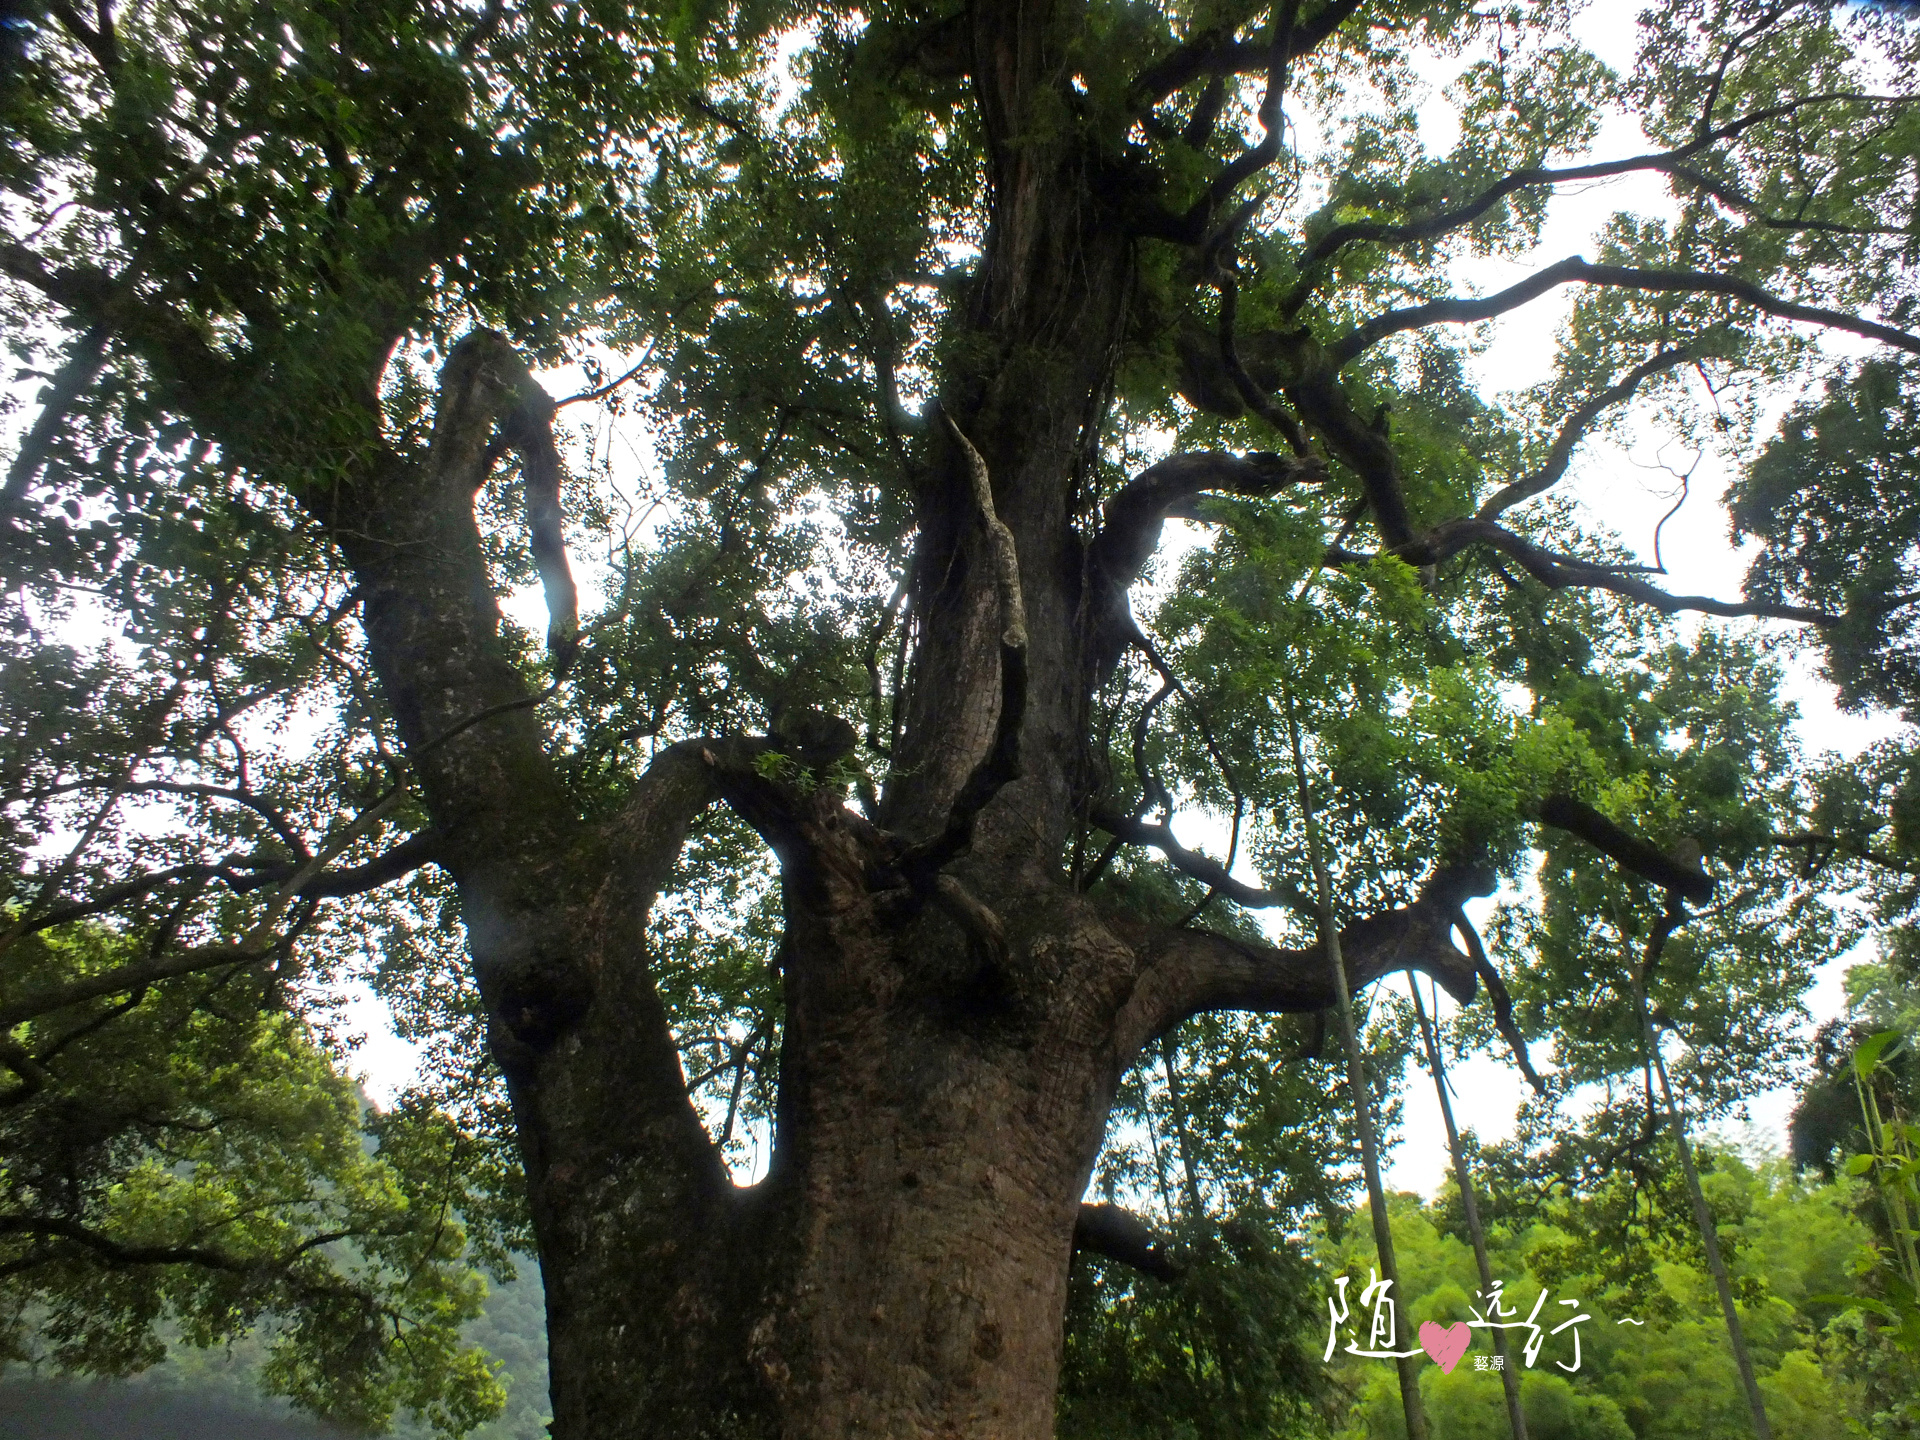 一棵老樟树守护婺源严田古村1600多年，如今成为该村旅游形象代言